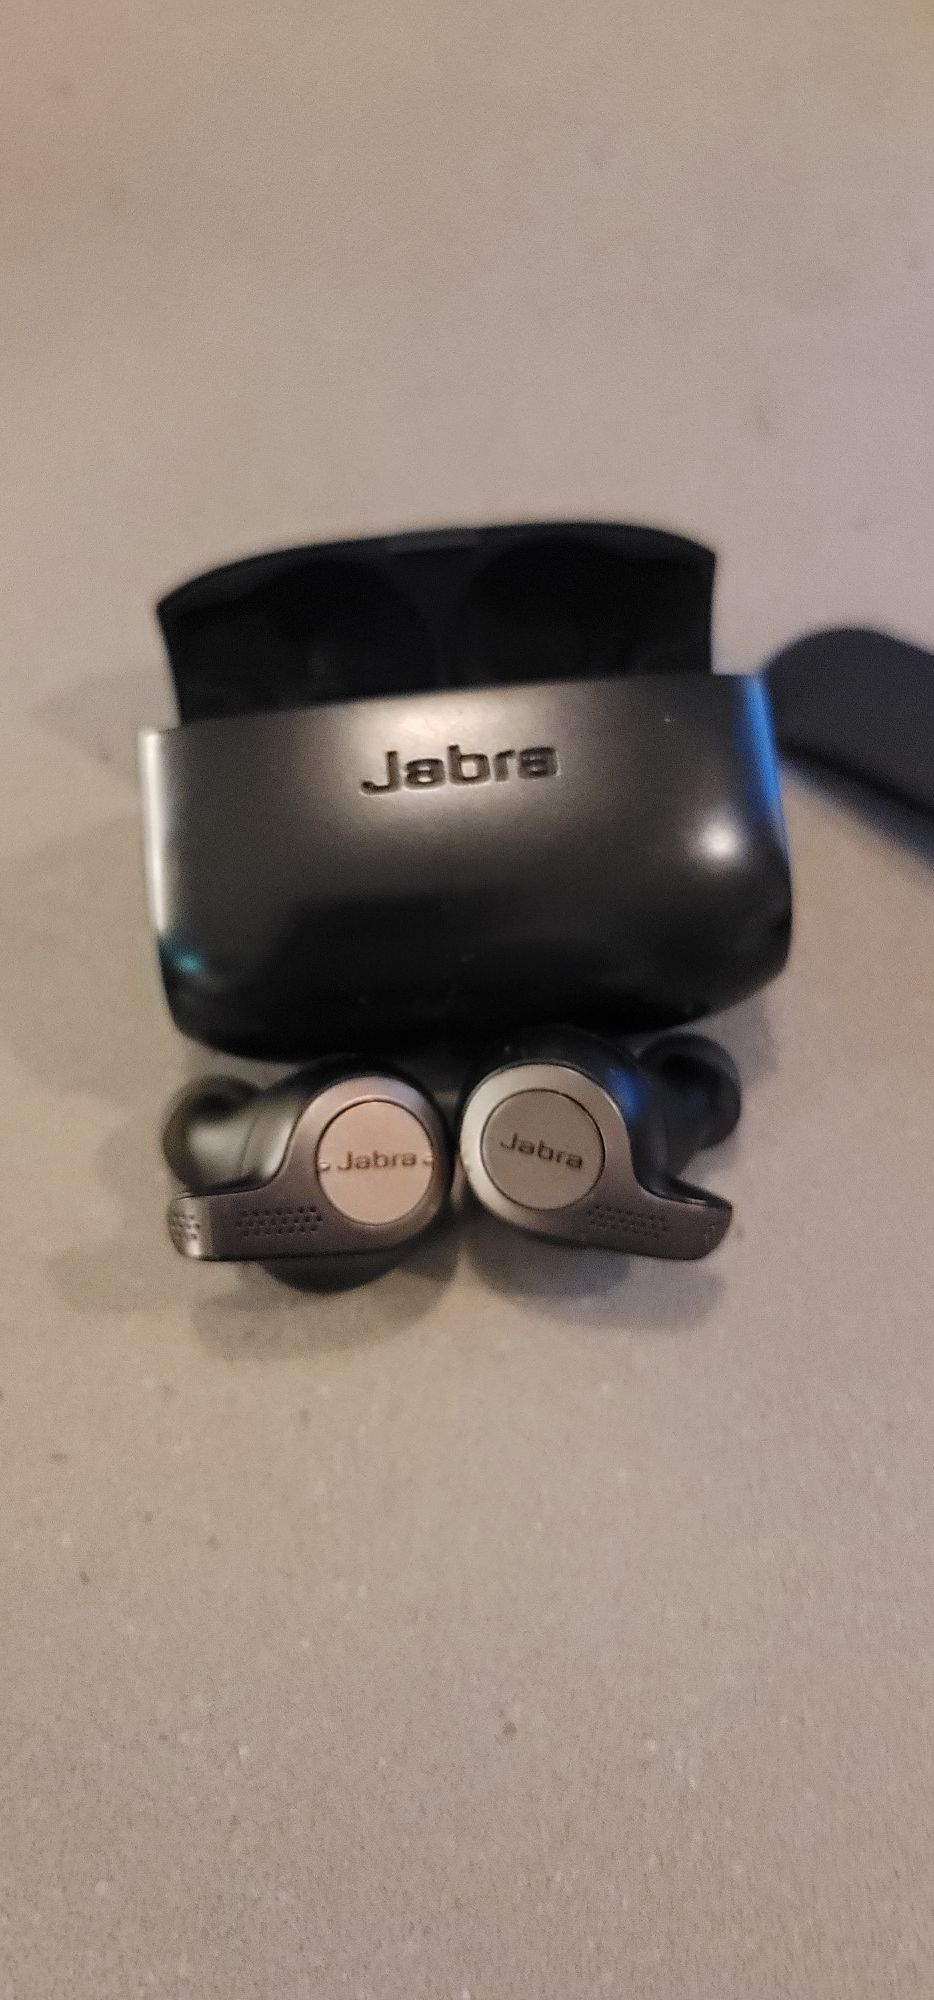 Jabra wireless headphones earbuds